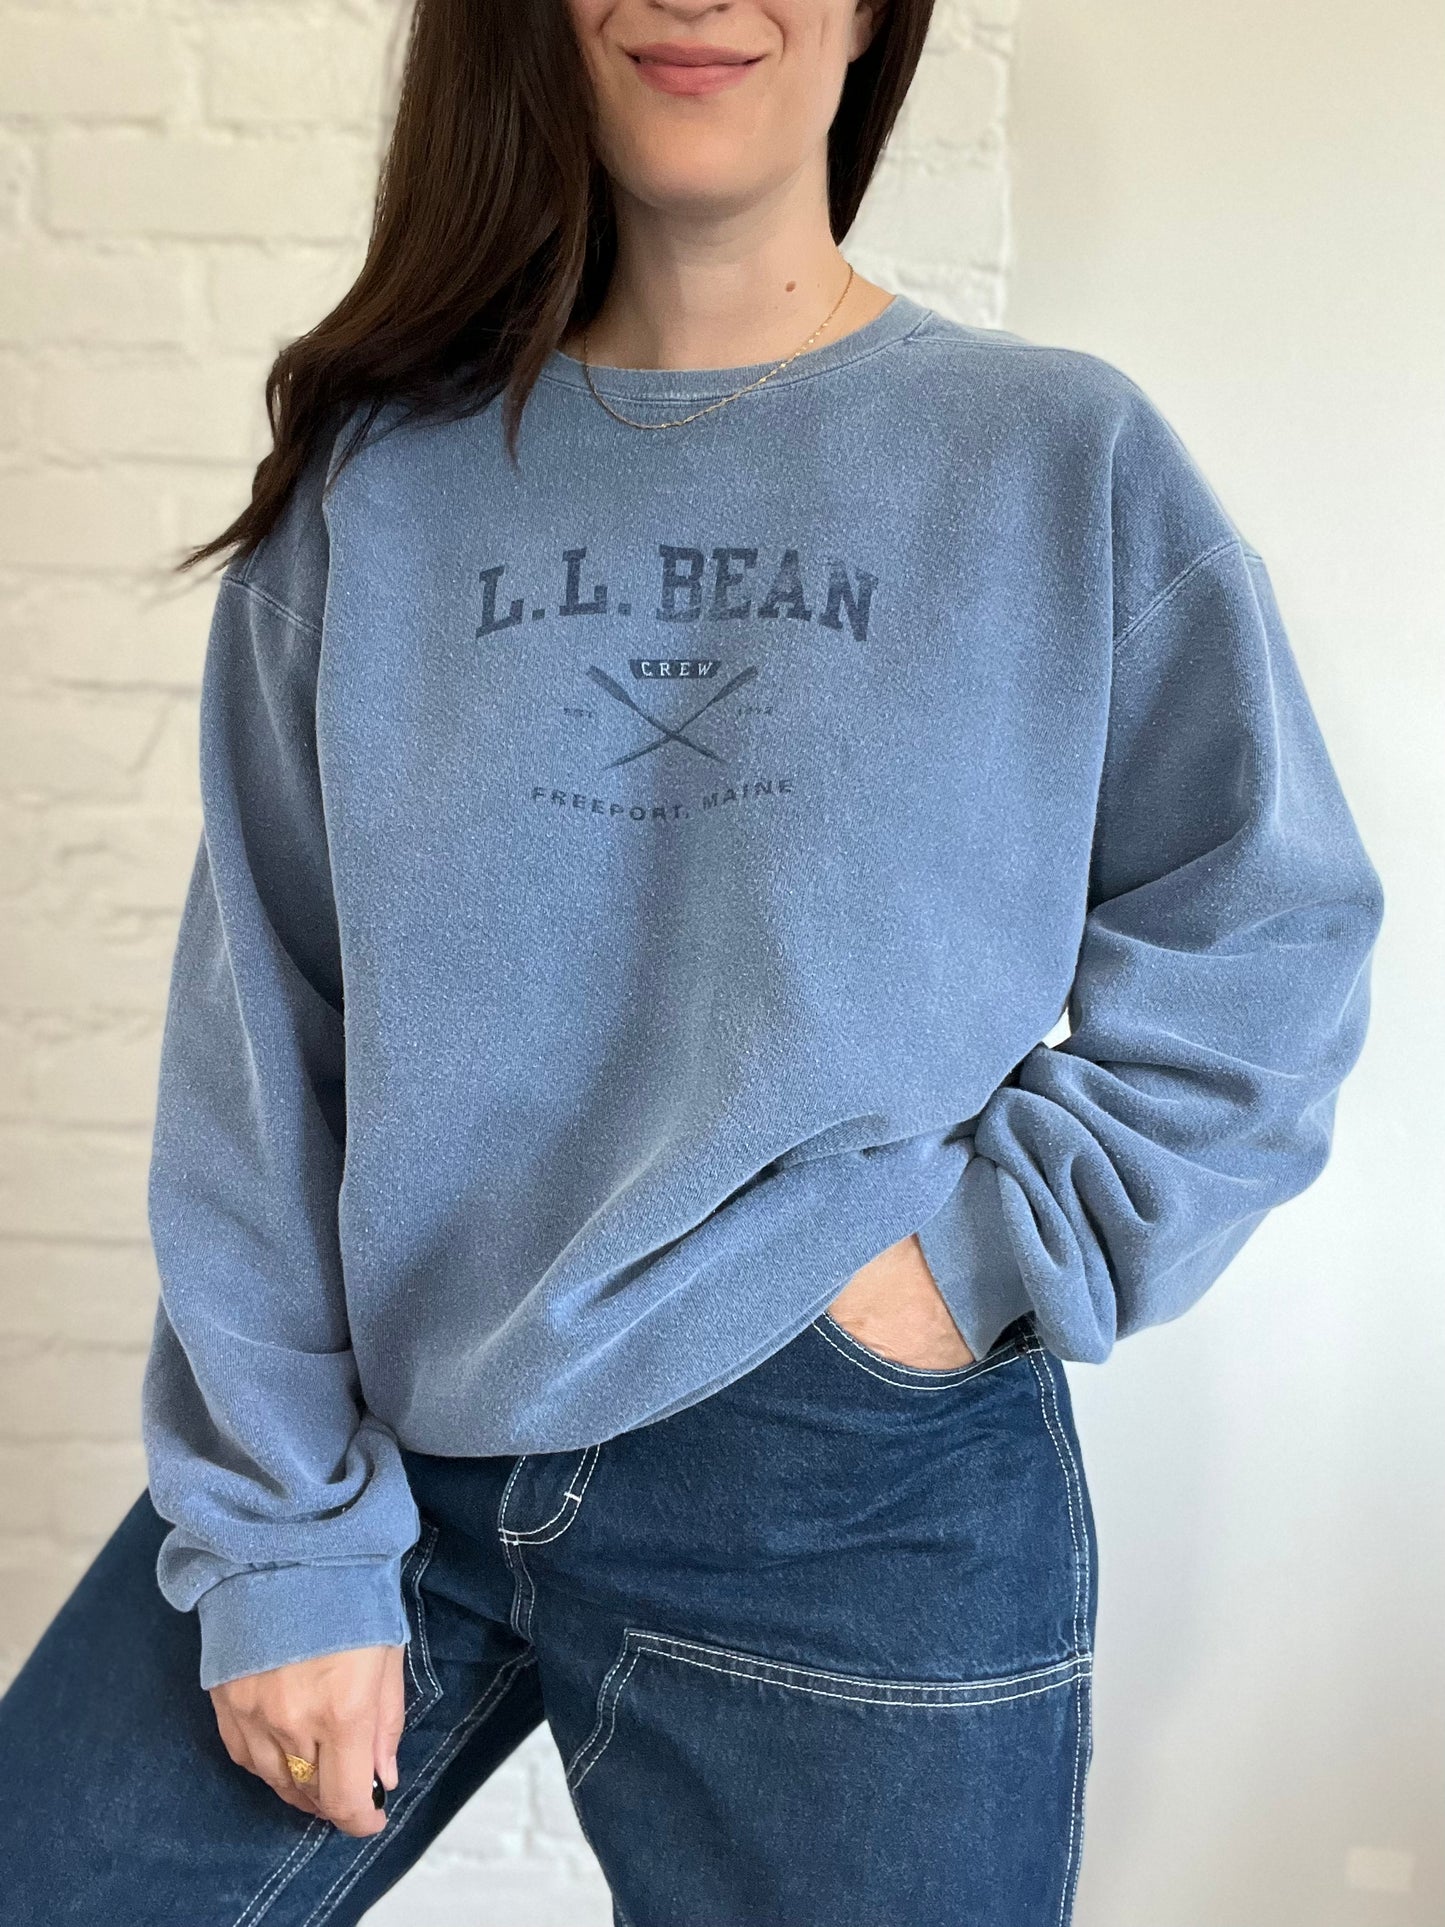 L.L Bean Crew Sweater  - Size XL